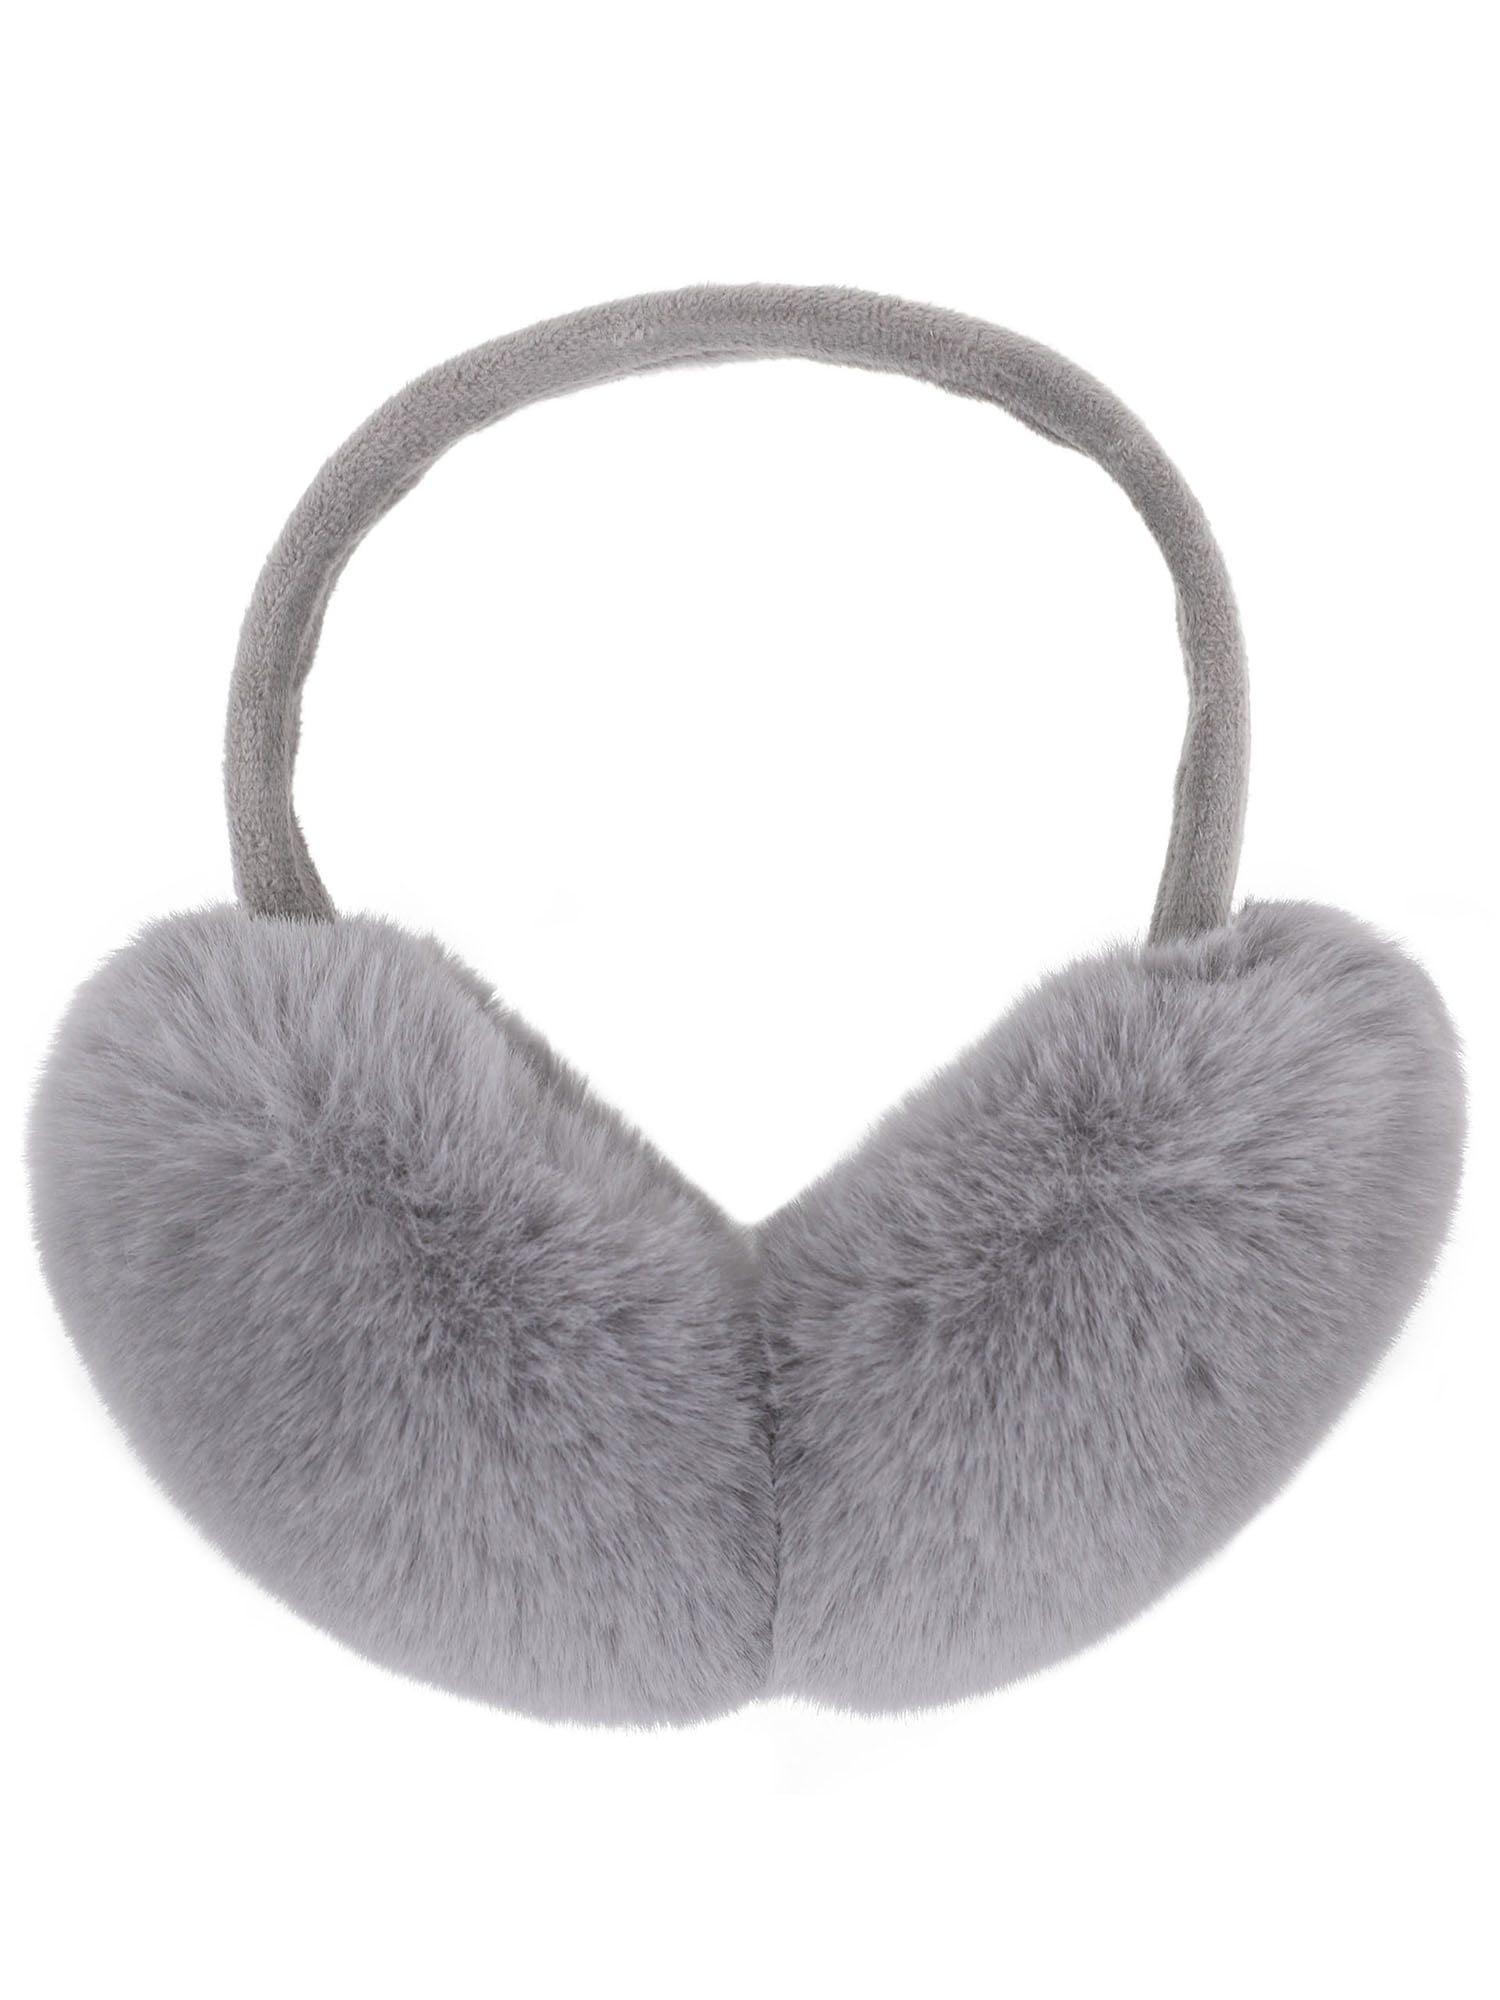 Simplicity Ear Muffs For Winter Women Foldable Faux Fur Ear Warmers Earmuffs 